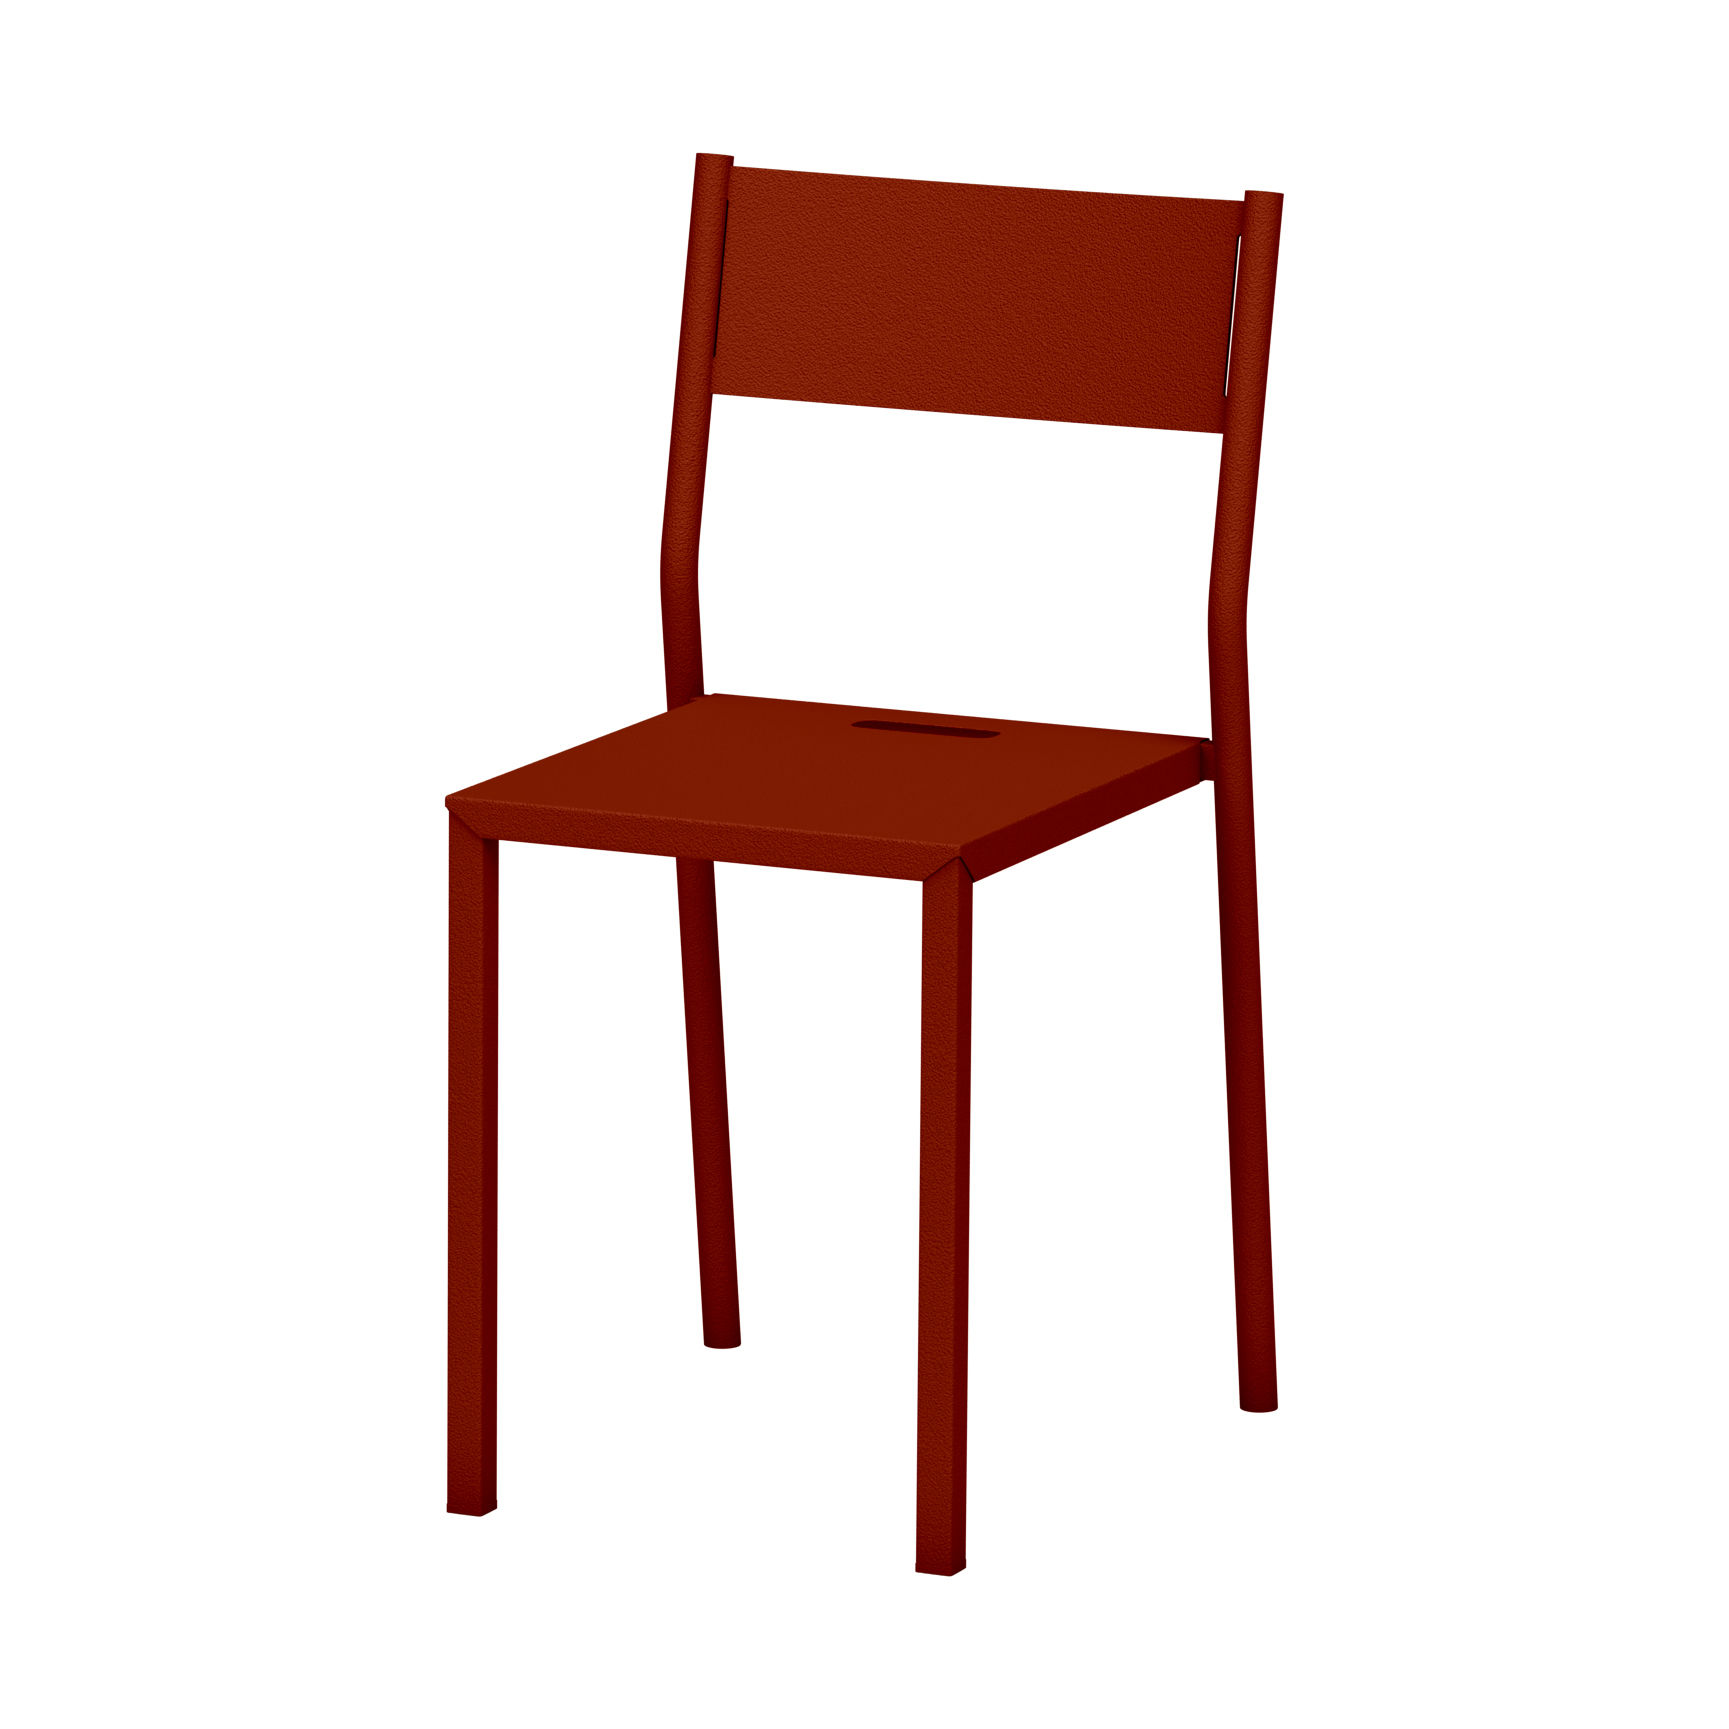 Chaise empilable Take INDOOR / Acier - Matière Grise rouge/orange/marron en métal